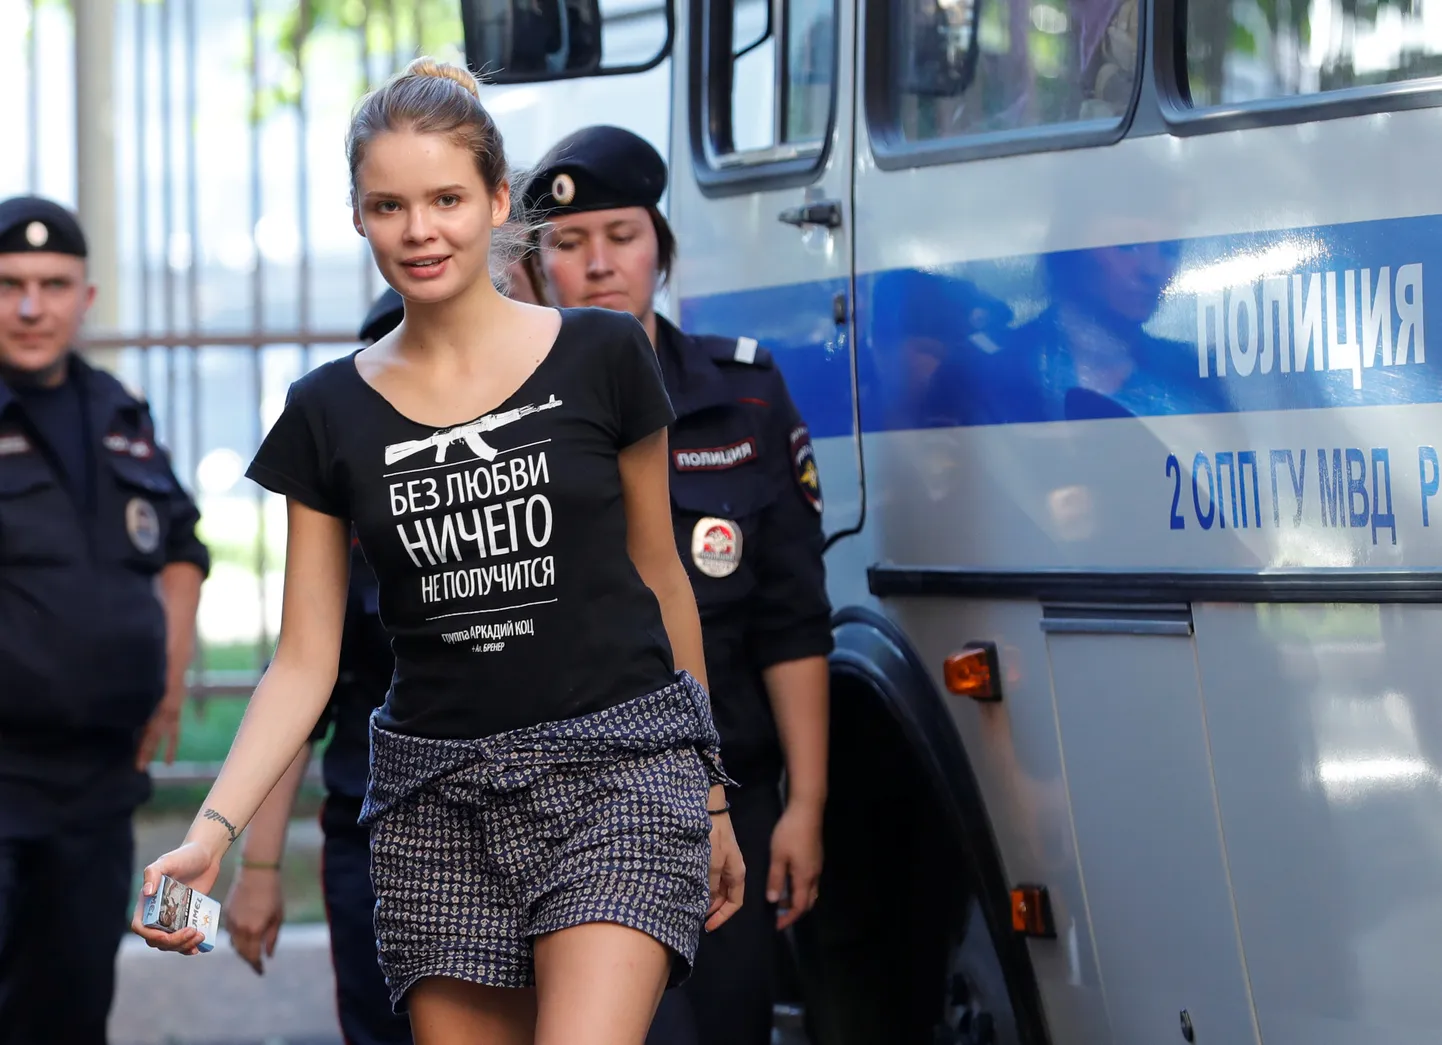 Krievijas protestu grupas "Pussy Riot" dalībniece Veronika Ņikuļšina. Ilustratīvs foto.